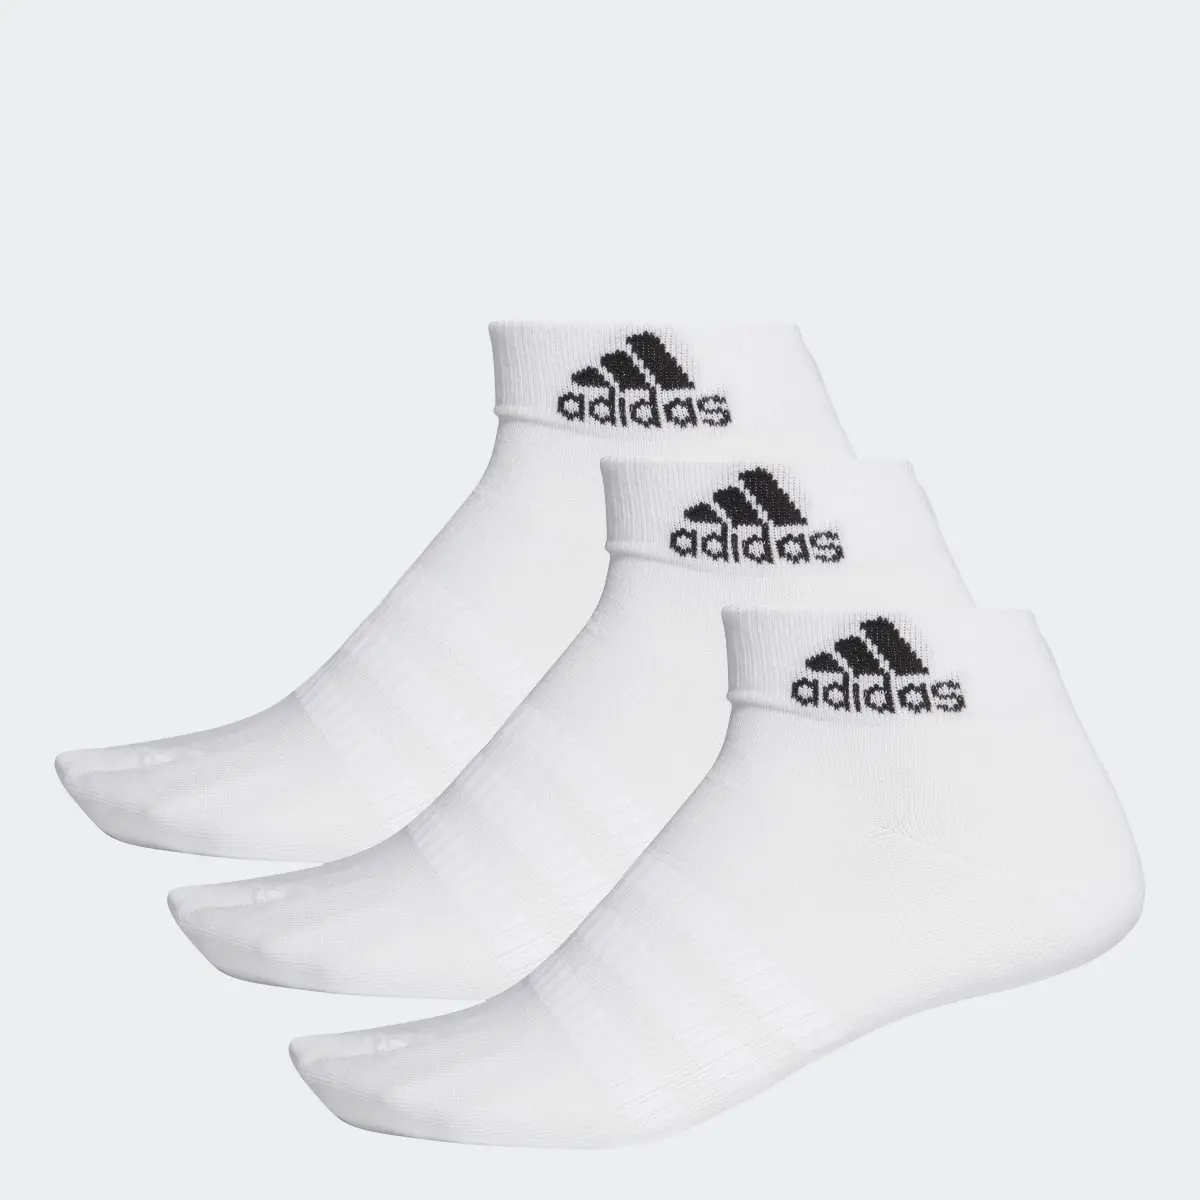 Adidas ANKLE SOCKS - 3 PAIRS. 1